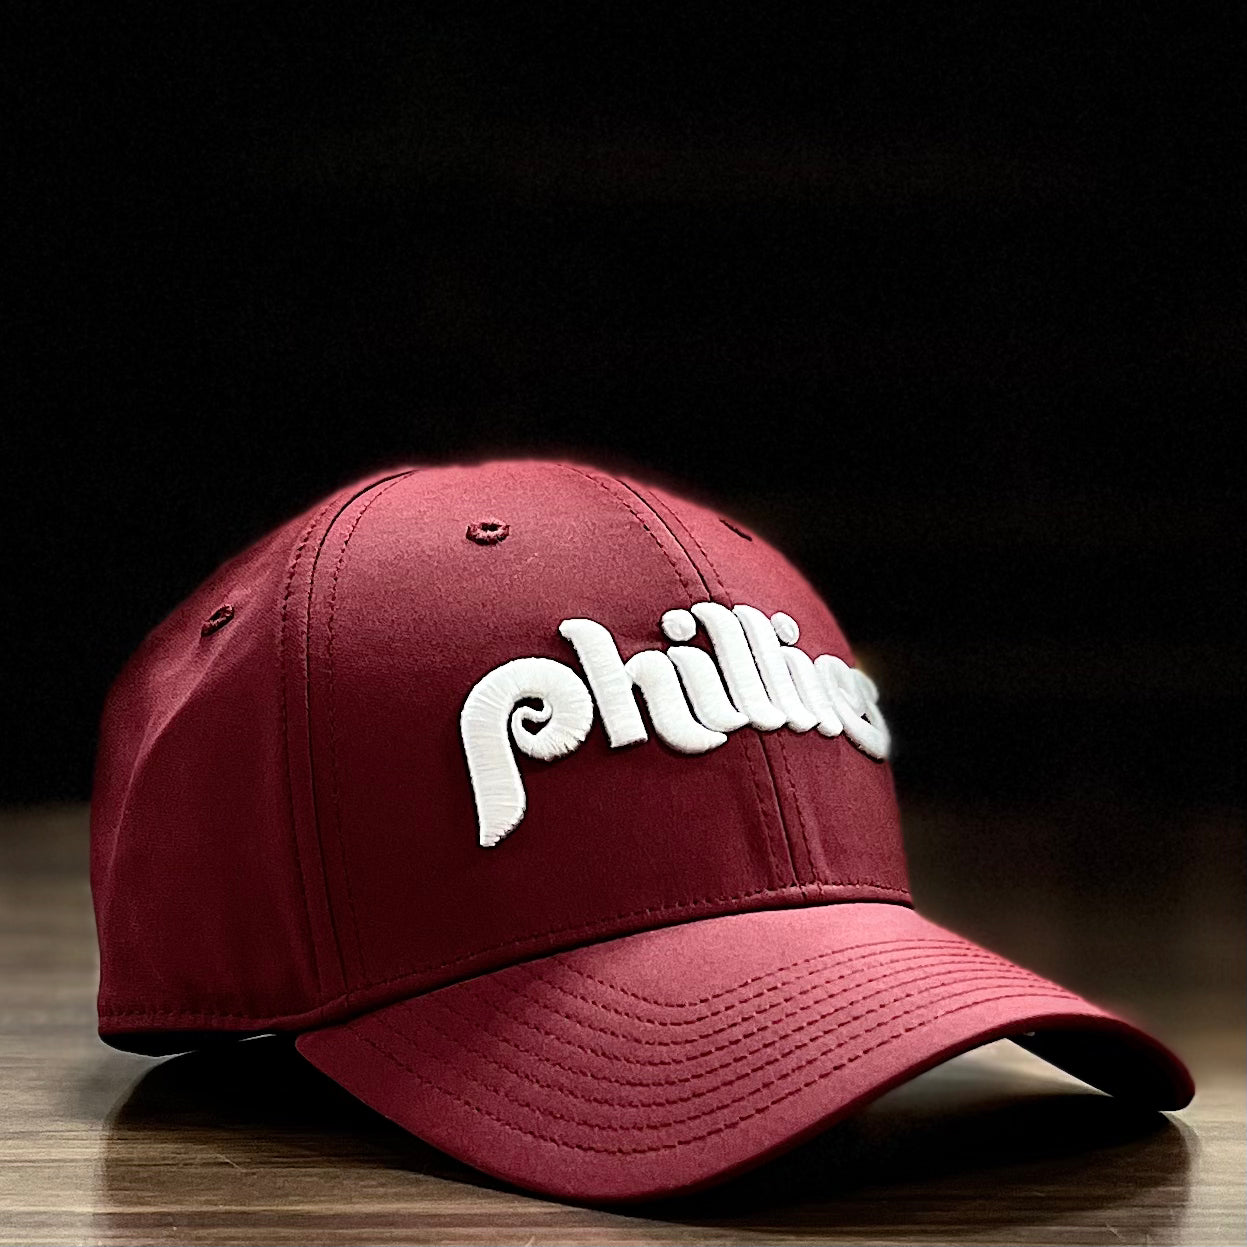 cooperstown phillies hat